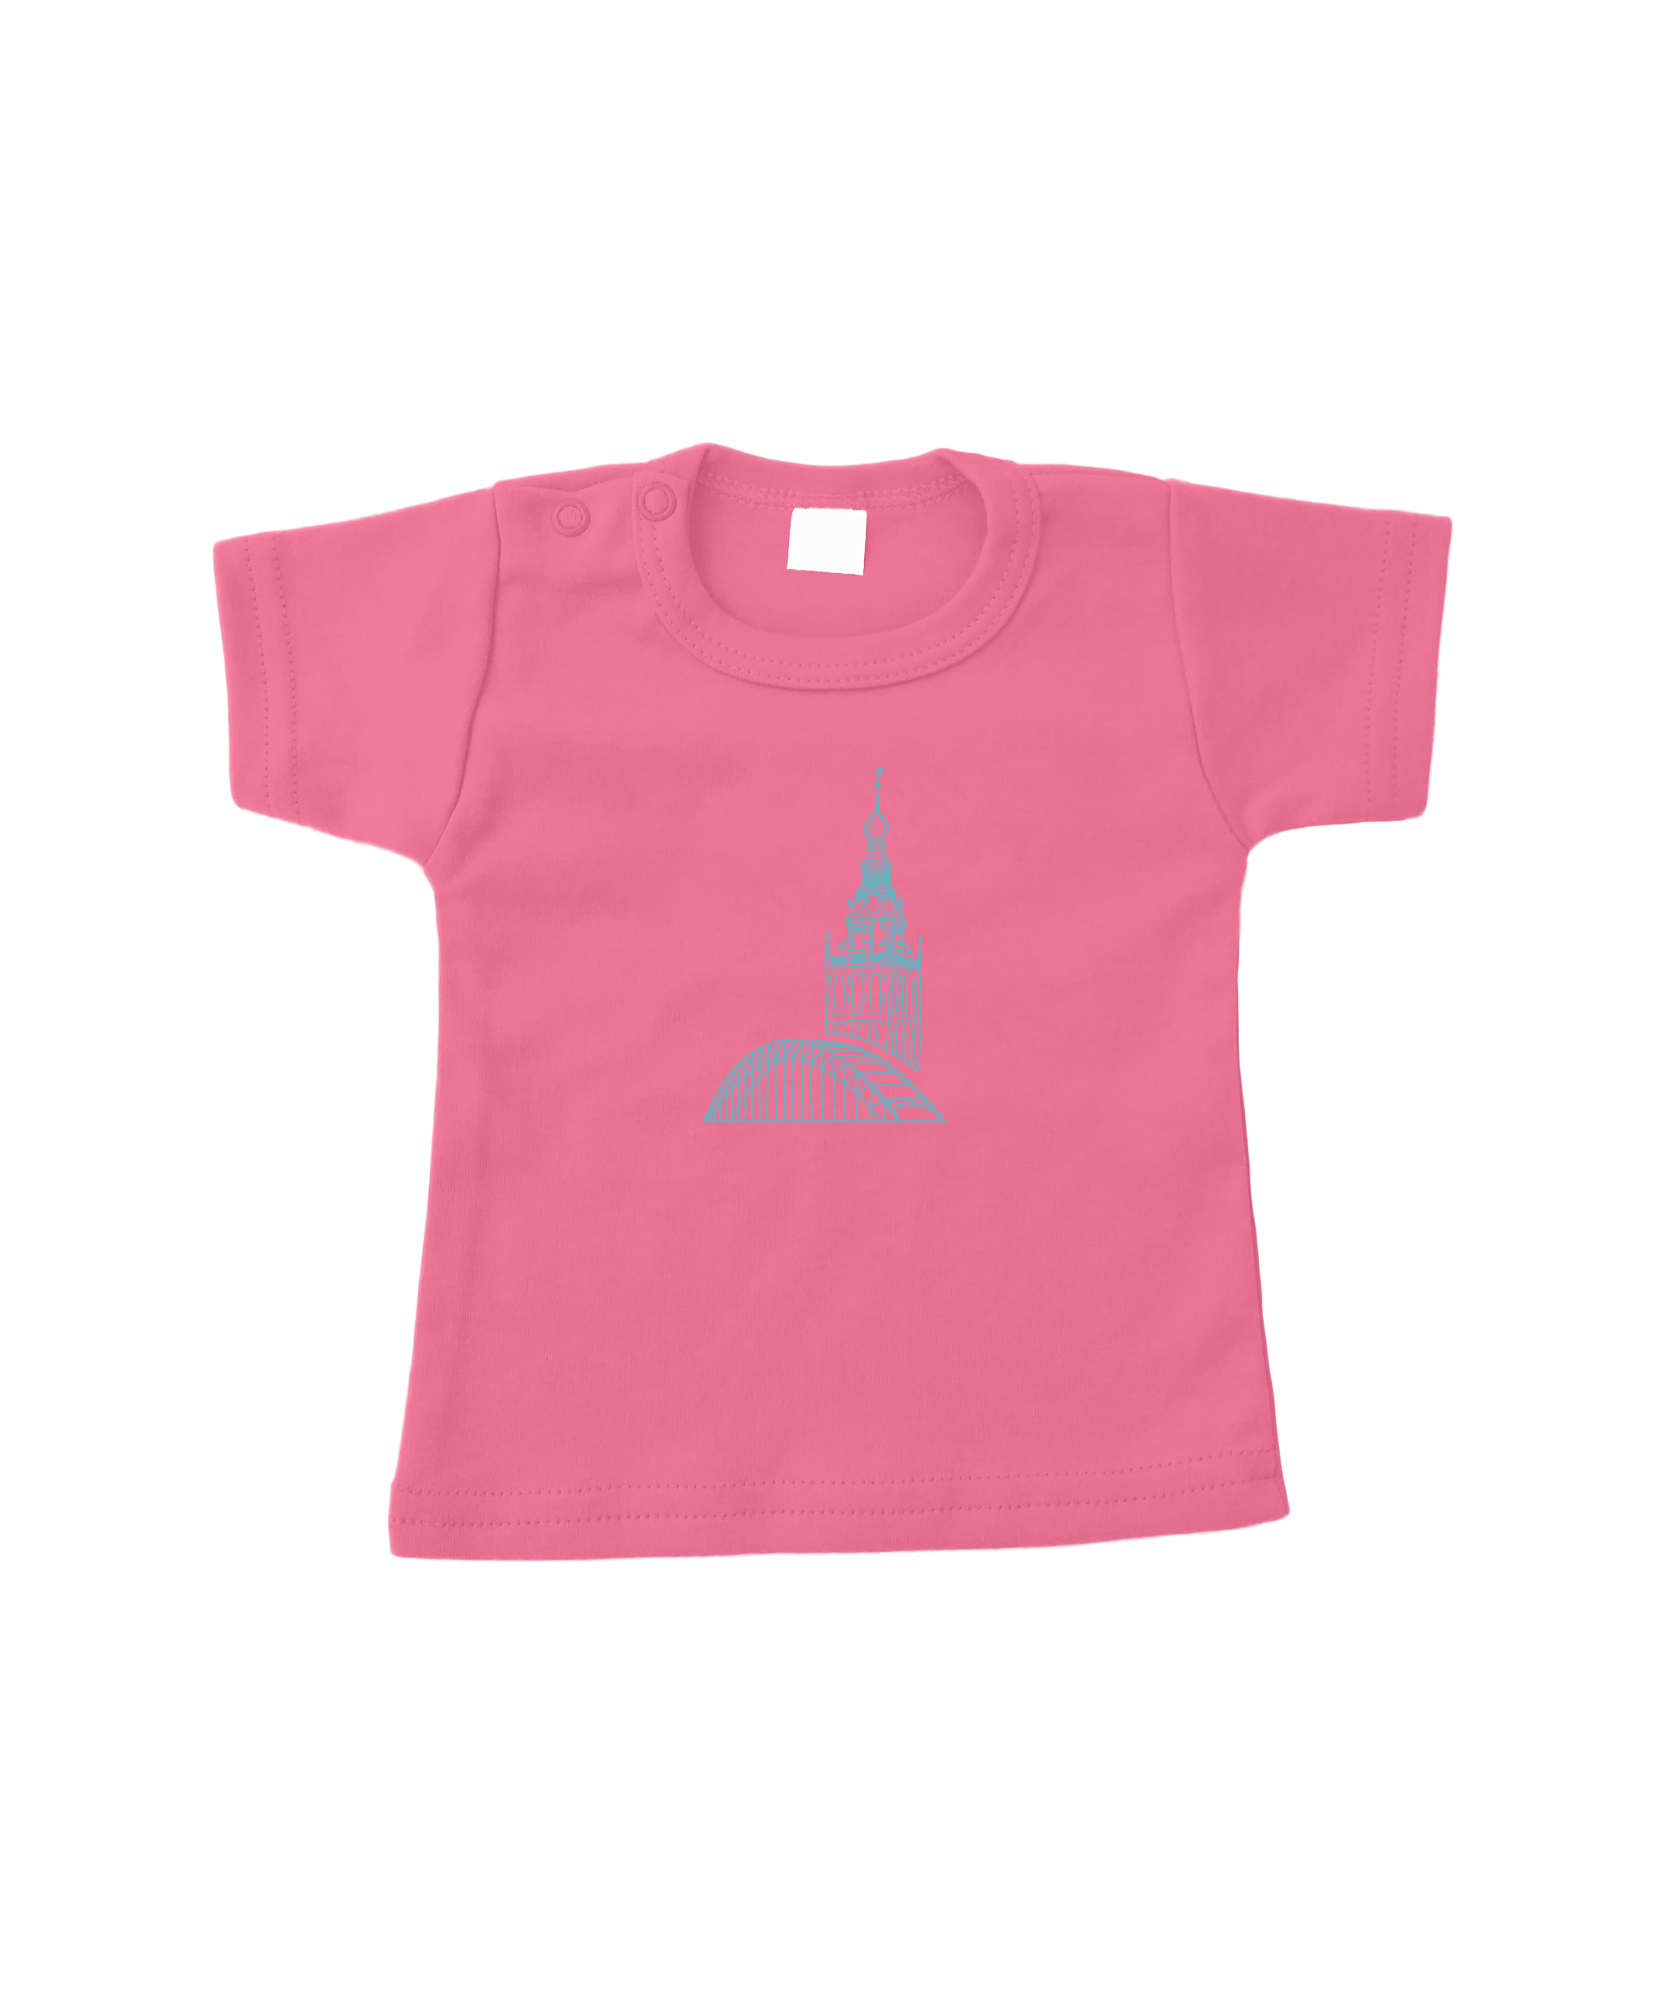 ILOVENIJMEGEN - T-shirt - St Stevens - Pink